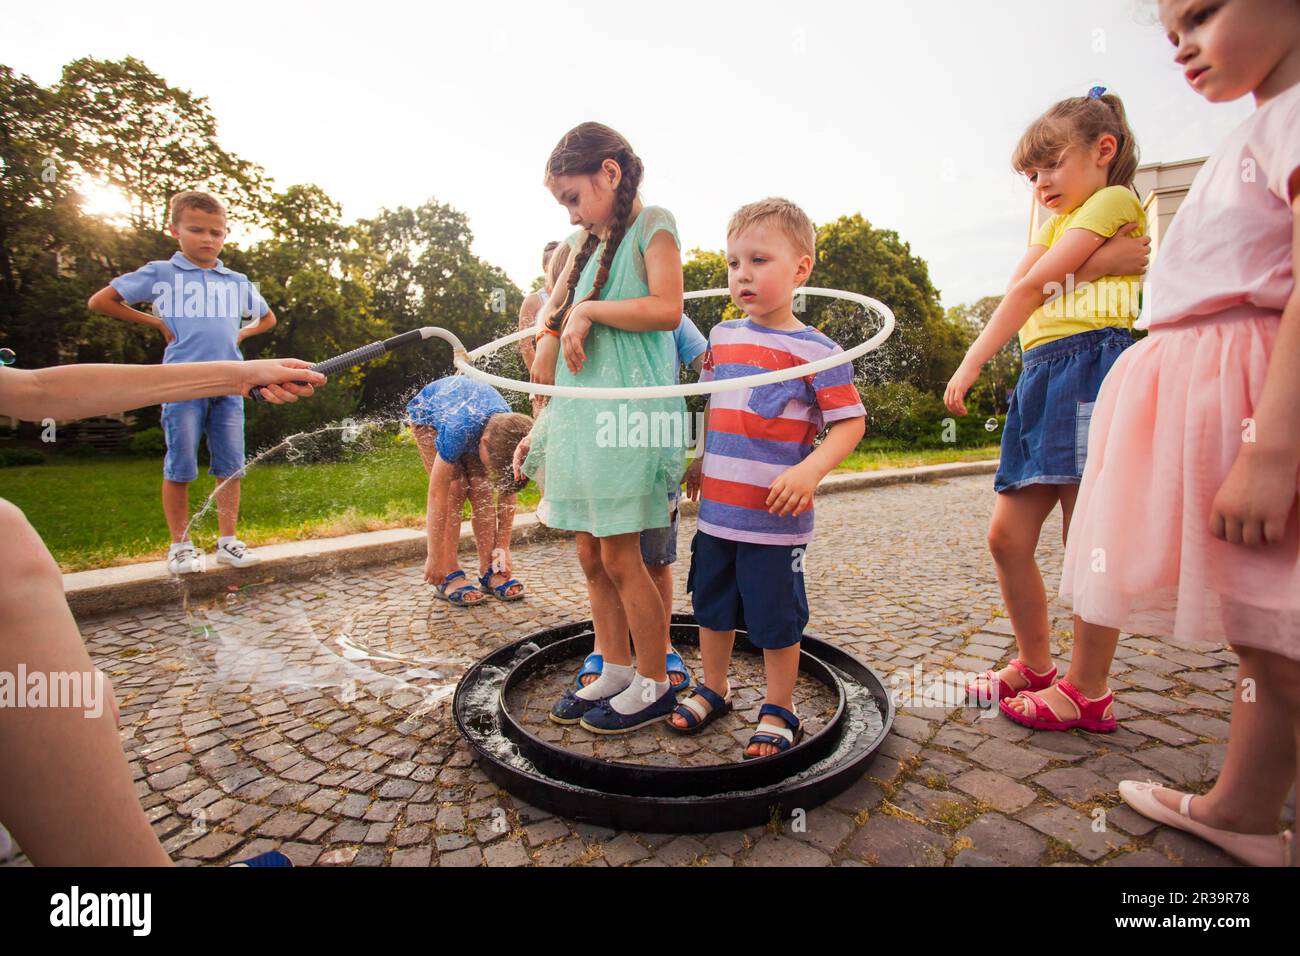 Groupe d'enfants s'amusent avec de grosses bulles de savon Banque D'Images